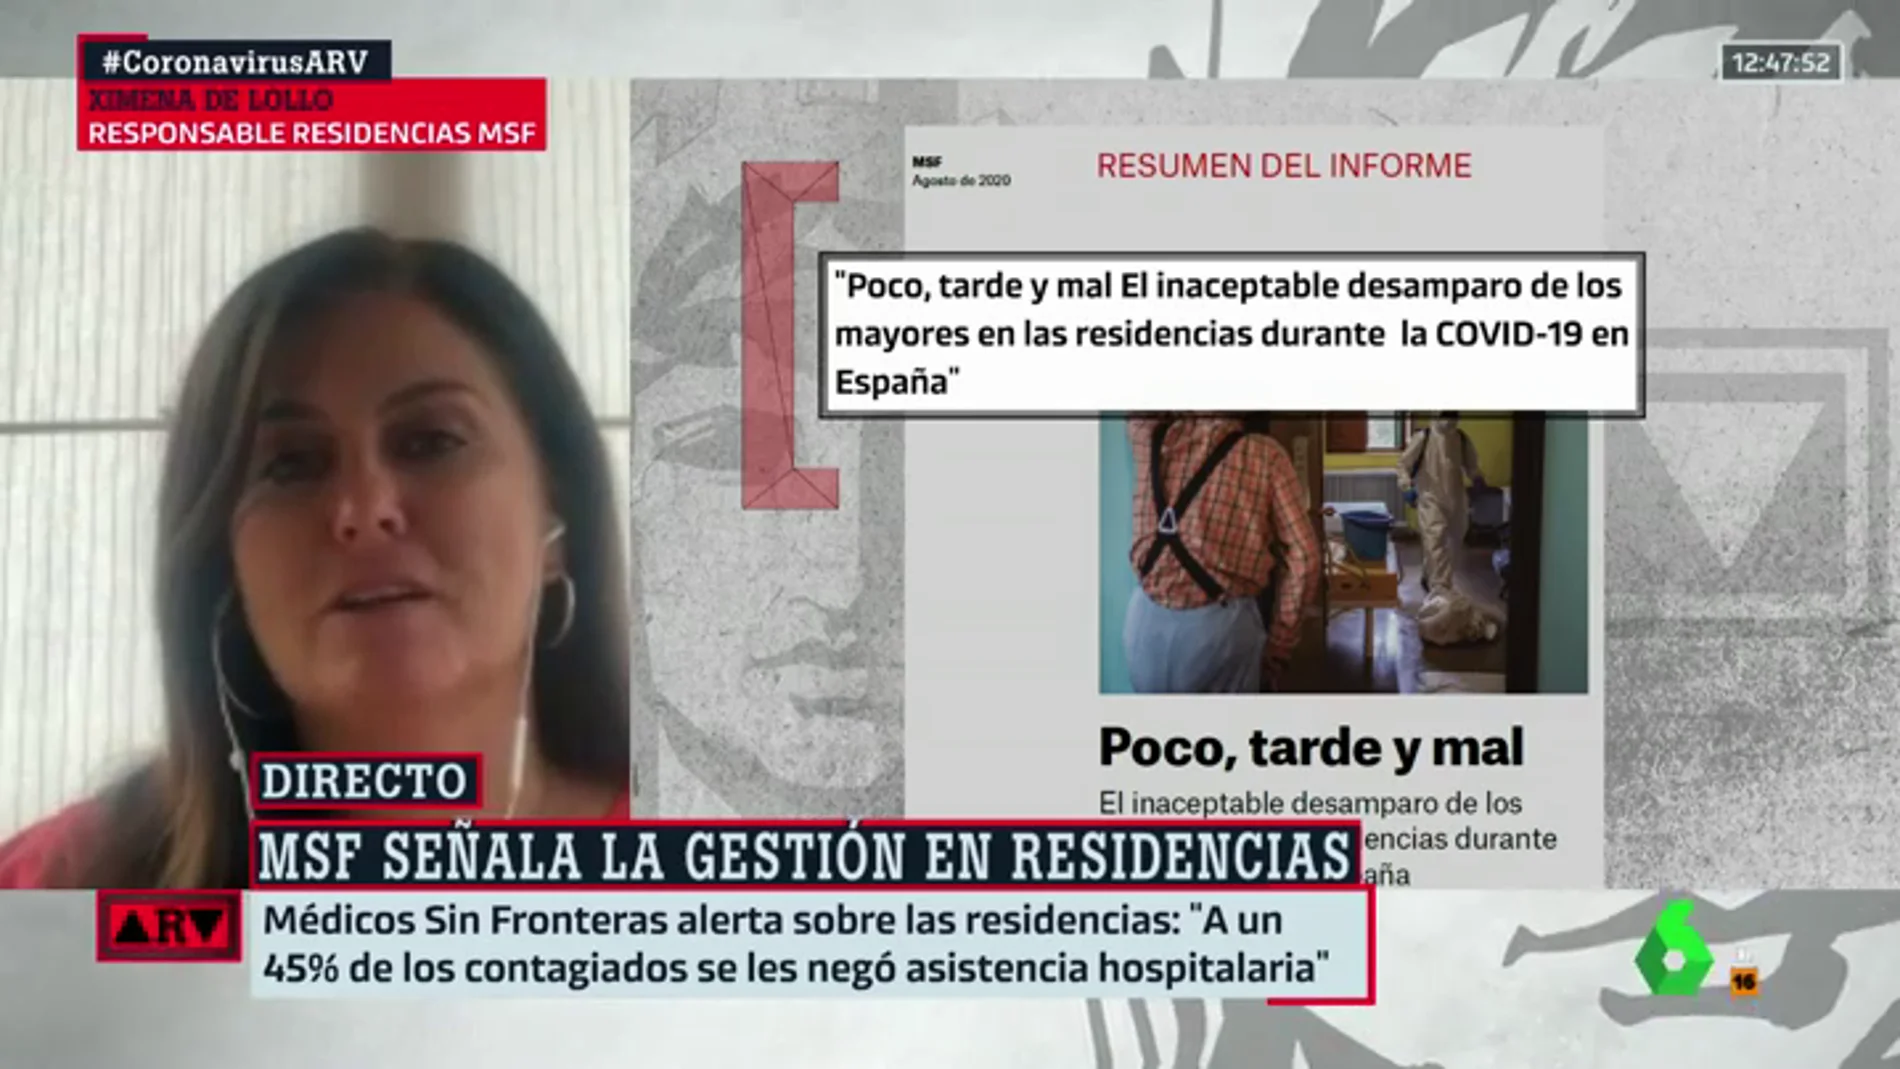  Ximena de Lollo, responsable de la respuesta en residencias de Médicos Sin Fronteras